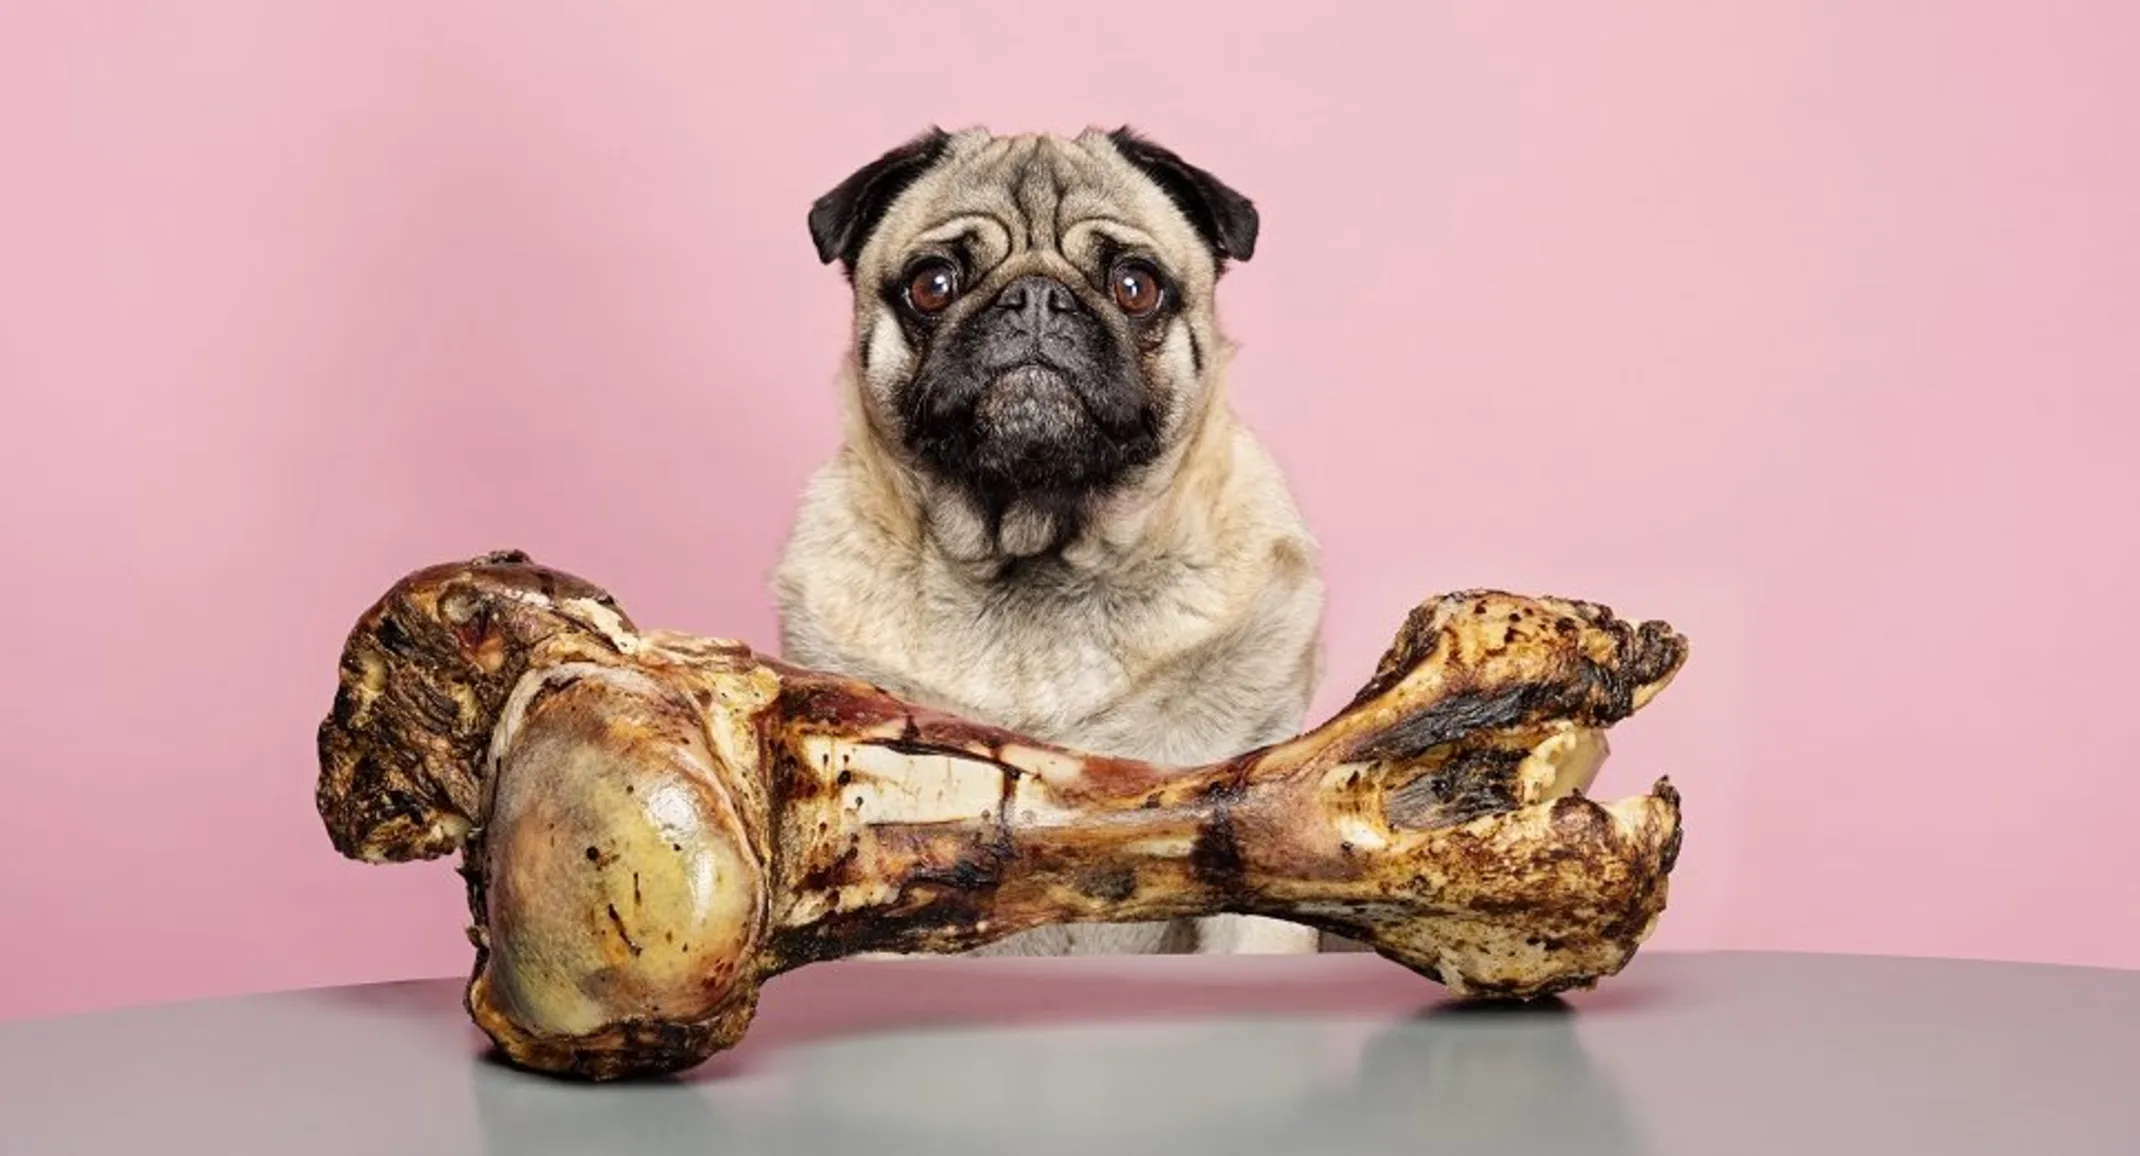 A pug with a giant bone